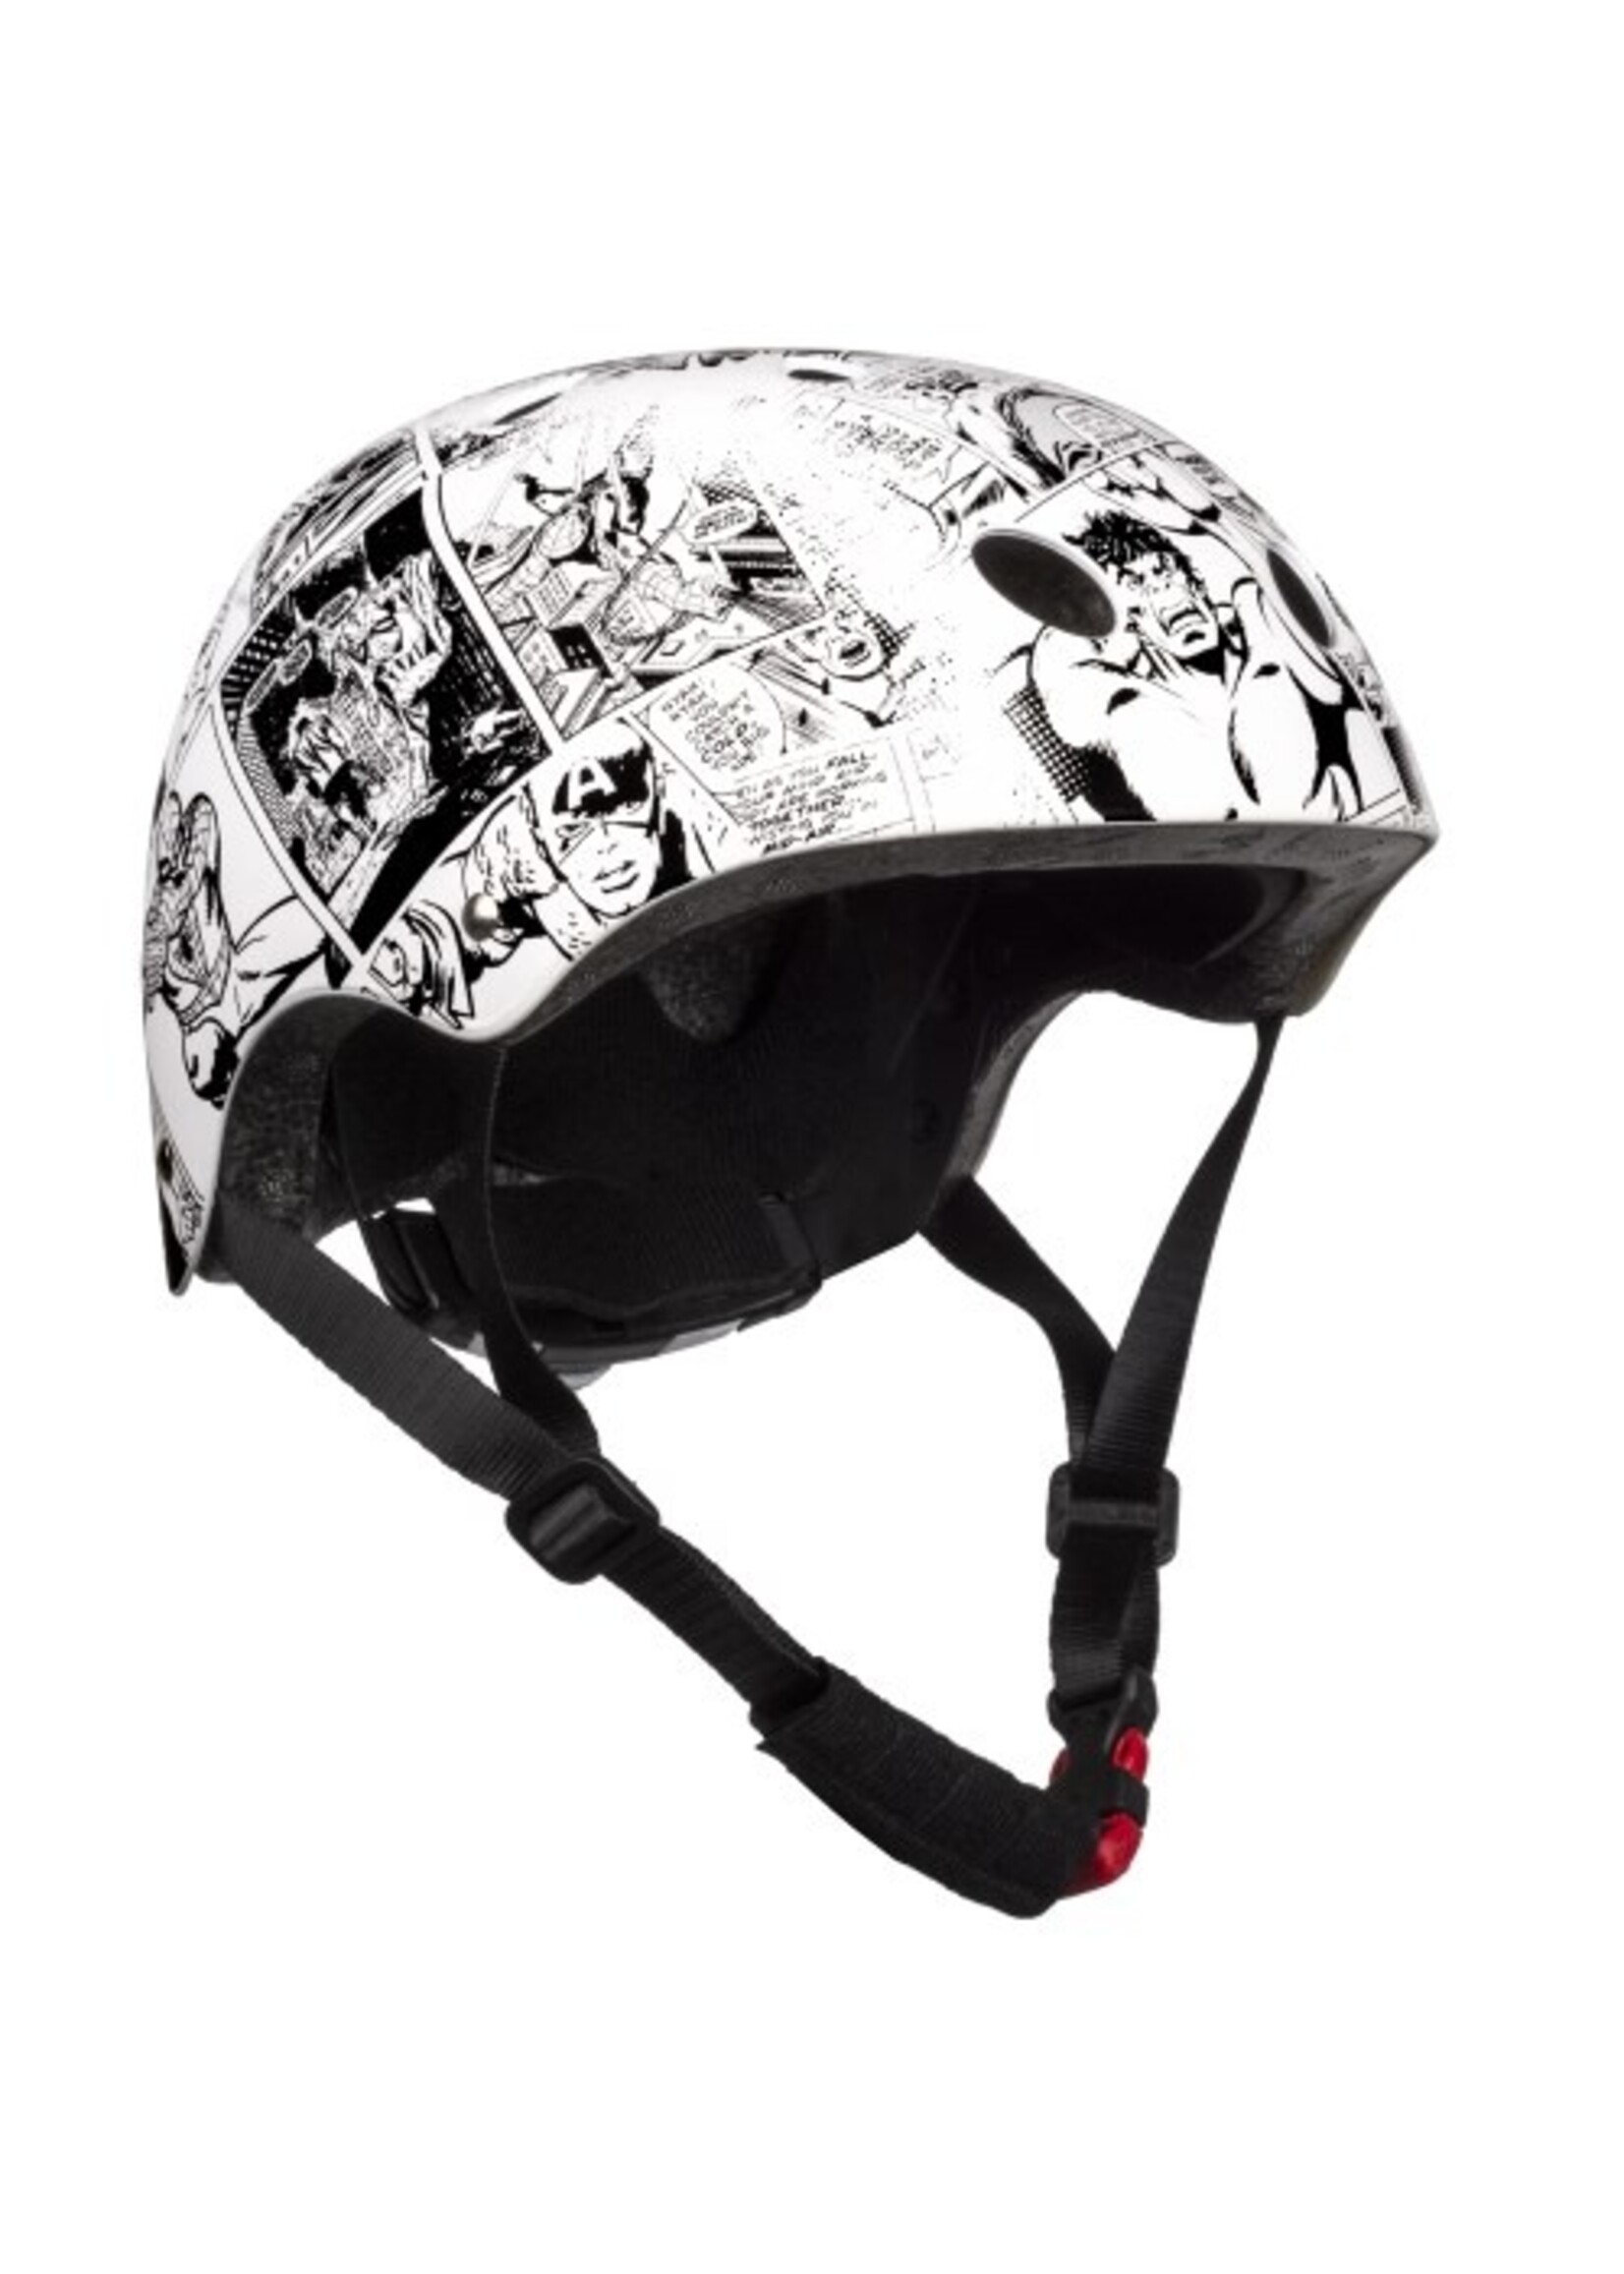 Marvel Marvel Comics skate helmet from Marvel white